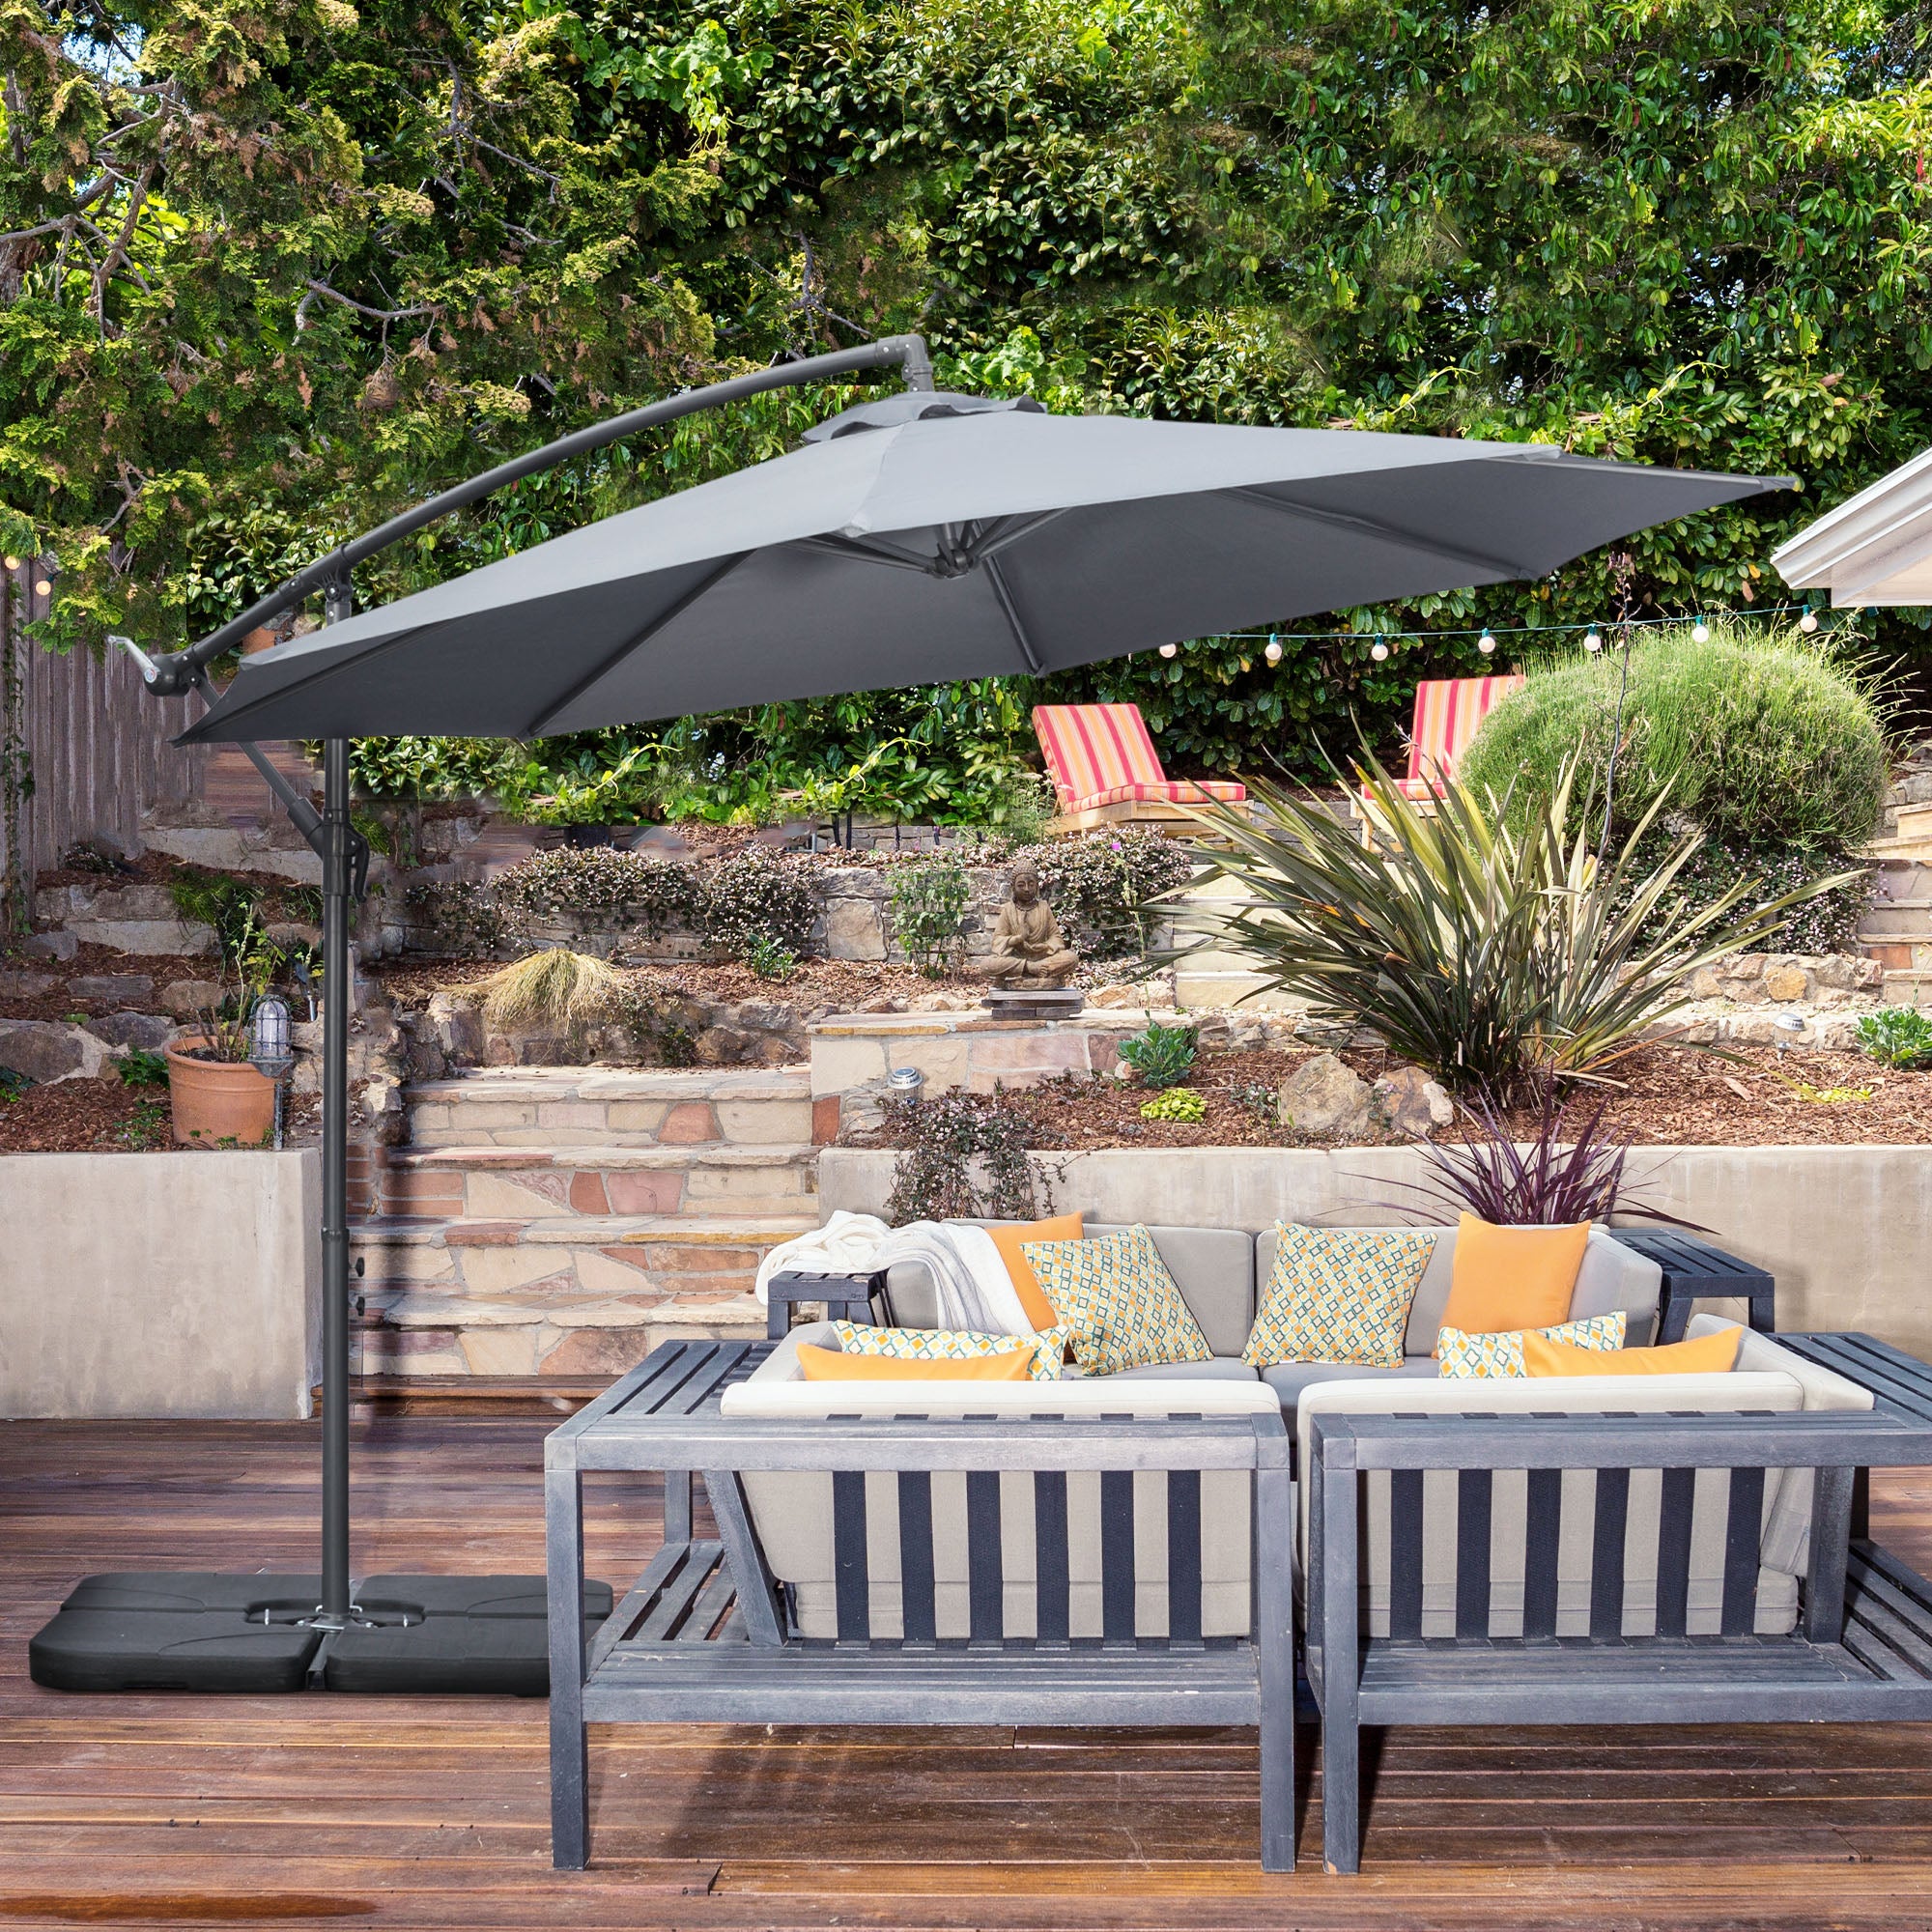 Outsunny 3(m) Garden Parasol Sun Shade Banana Umbrella Cantilever with Crank Handle, Cross Base Dark Grey